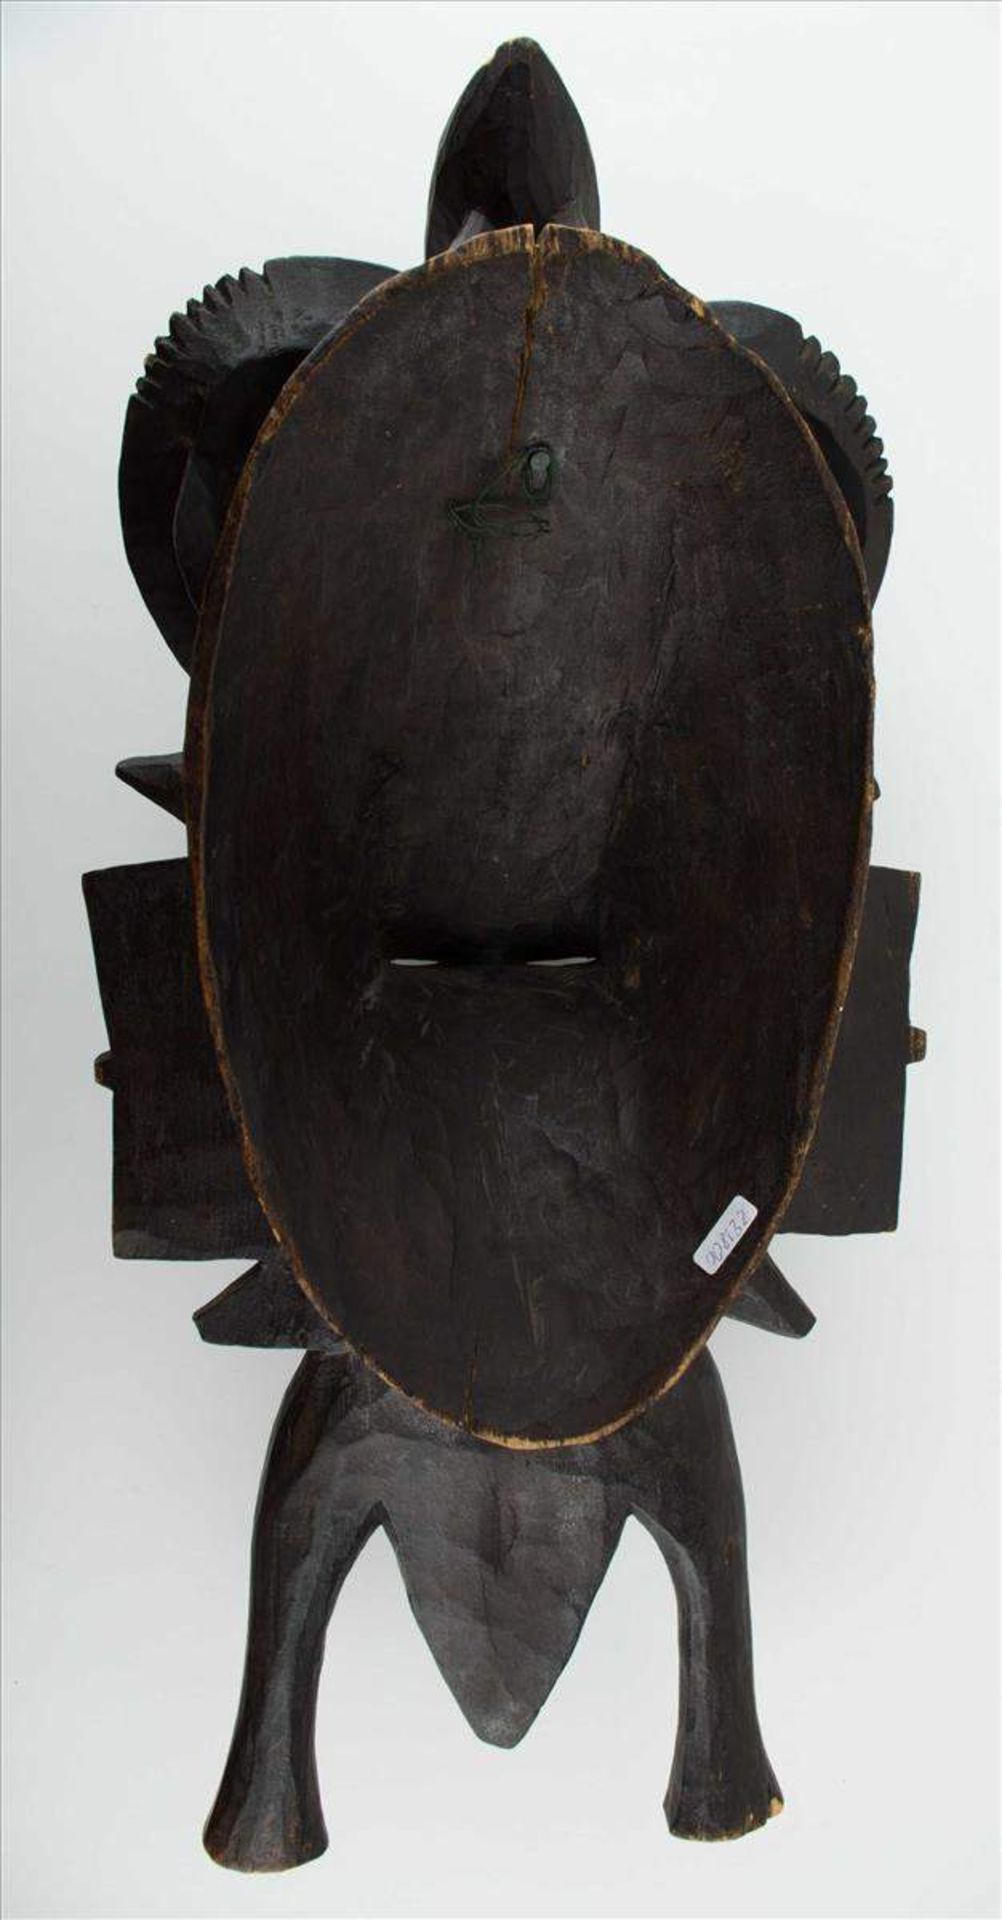 Afrikanische Senufo Maske Kolonialzeit / African Senufo mask, colonialism periodHolz, beschnitzt, L: